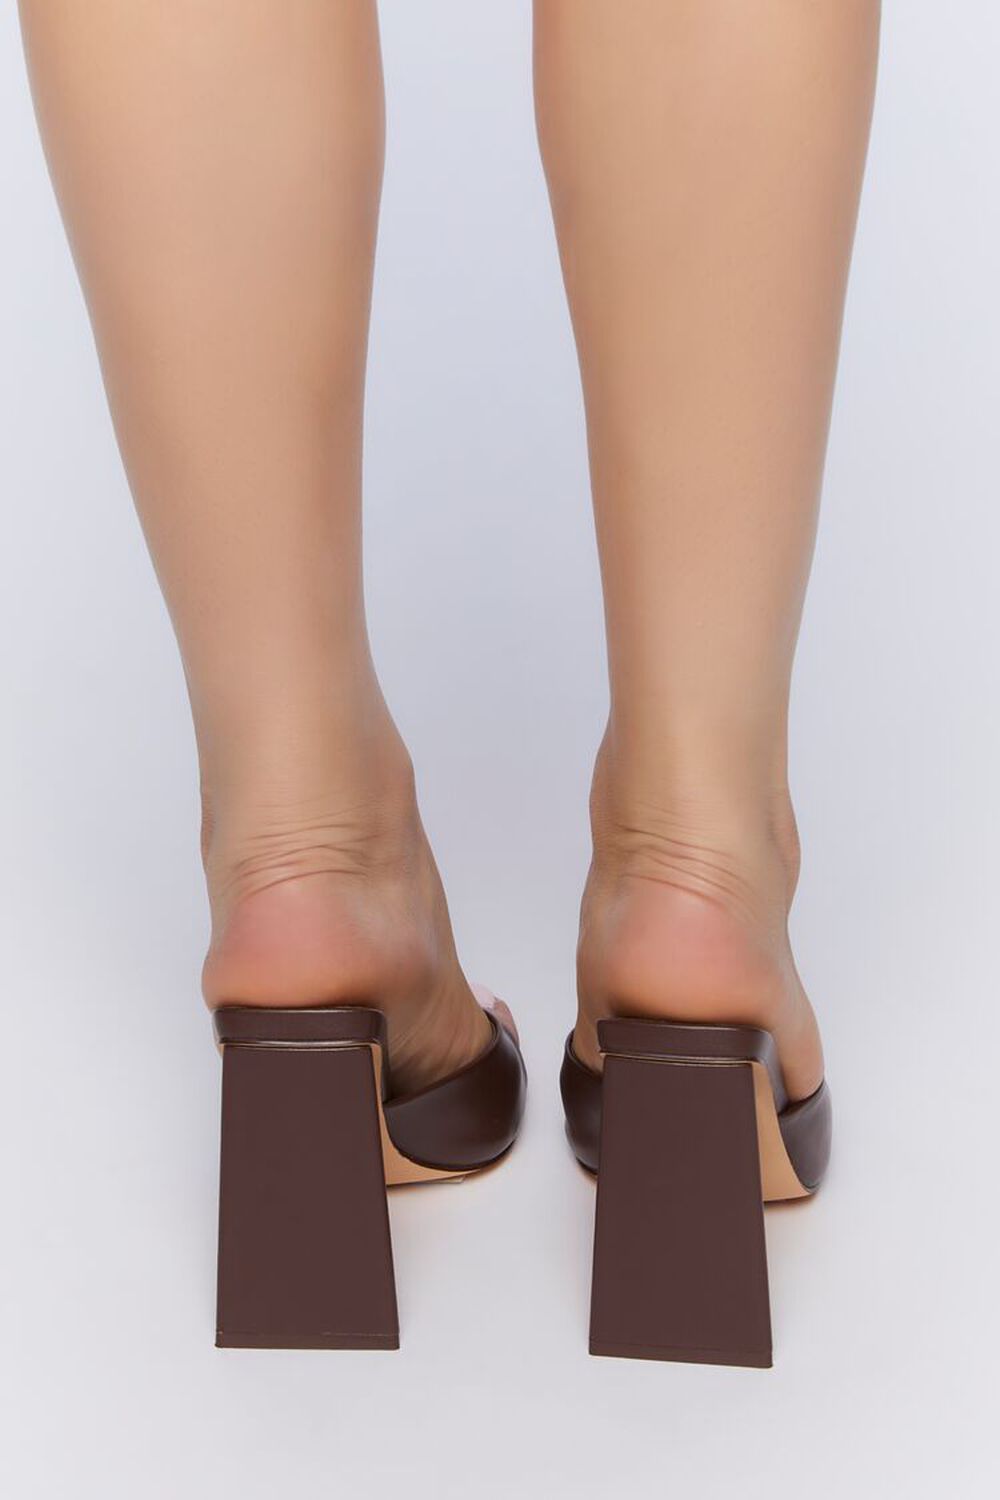 BROWN Chunky Slip-On Heels, image 3